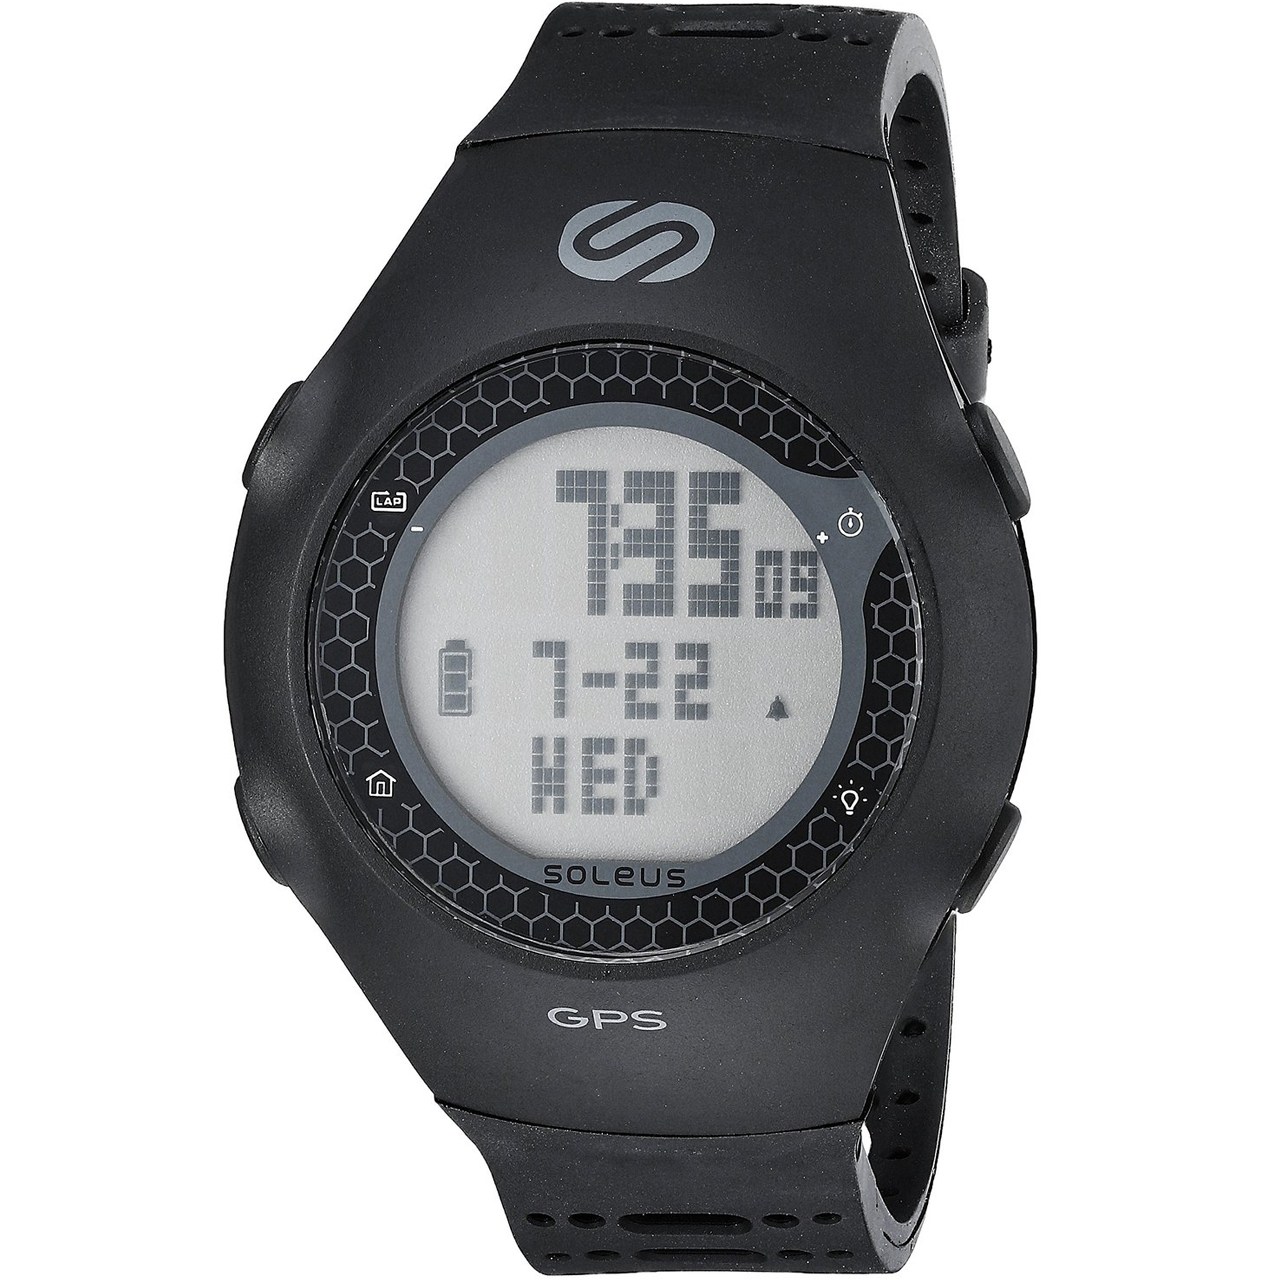 ساعت ورزشی سولئوس مدل GPS Turbo SG010-001